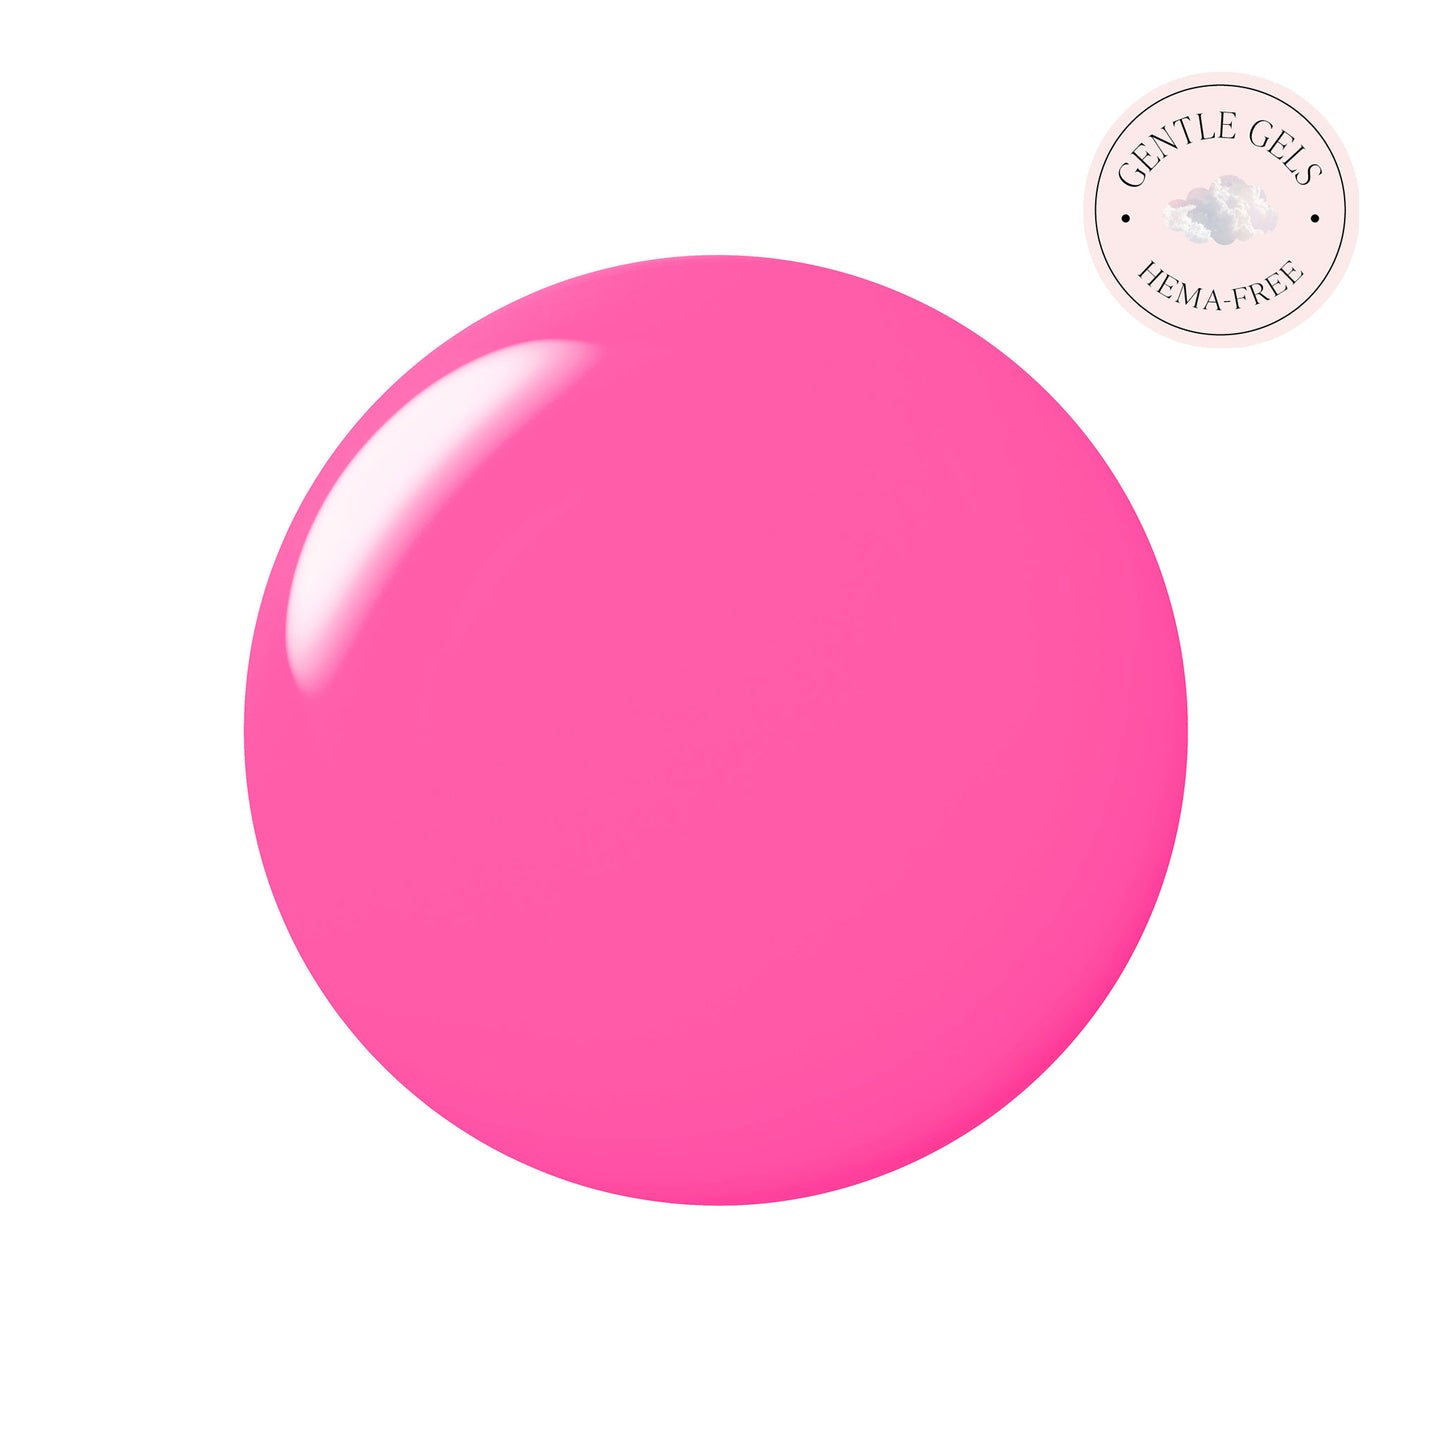 Pink-a-boo - Bright Neon Pink HEMA-Free Gel Nail Polish